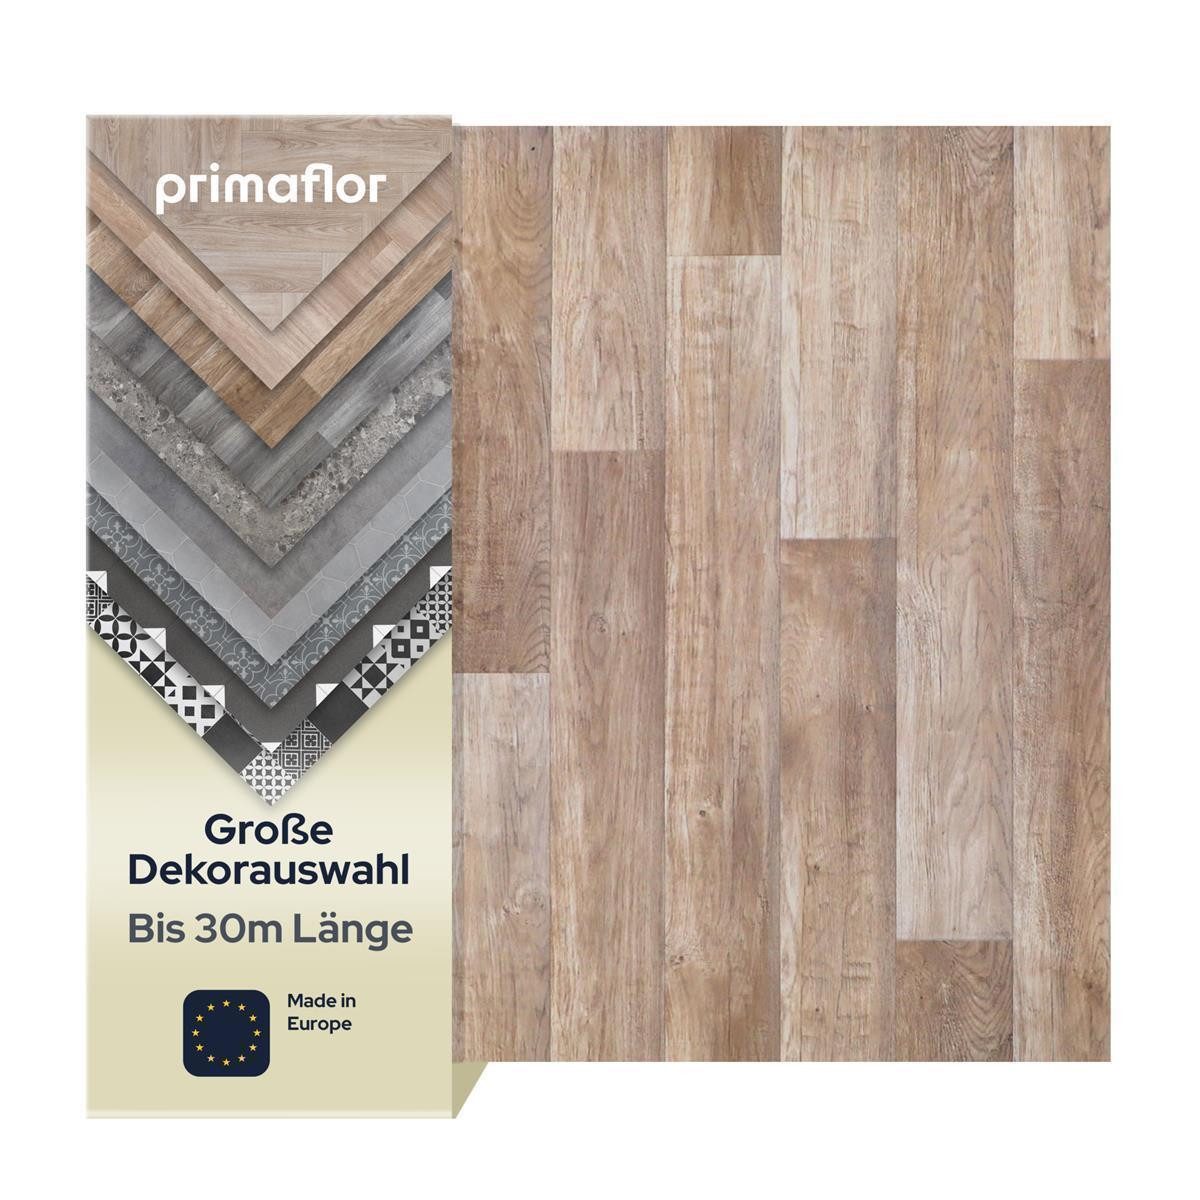 Primaflor-Ideen in Textil Vinylboden TACUTO - Eiche chalet - 2,00m x 1,00m - Meterware, Holzdekor, Dielen, Starke Nutzschicht